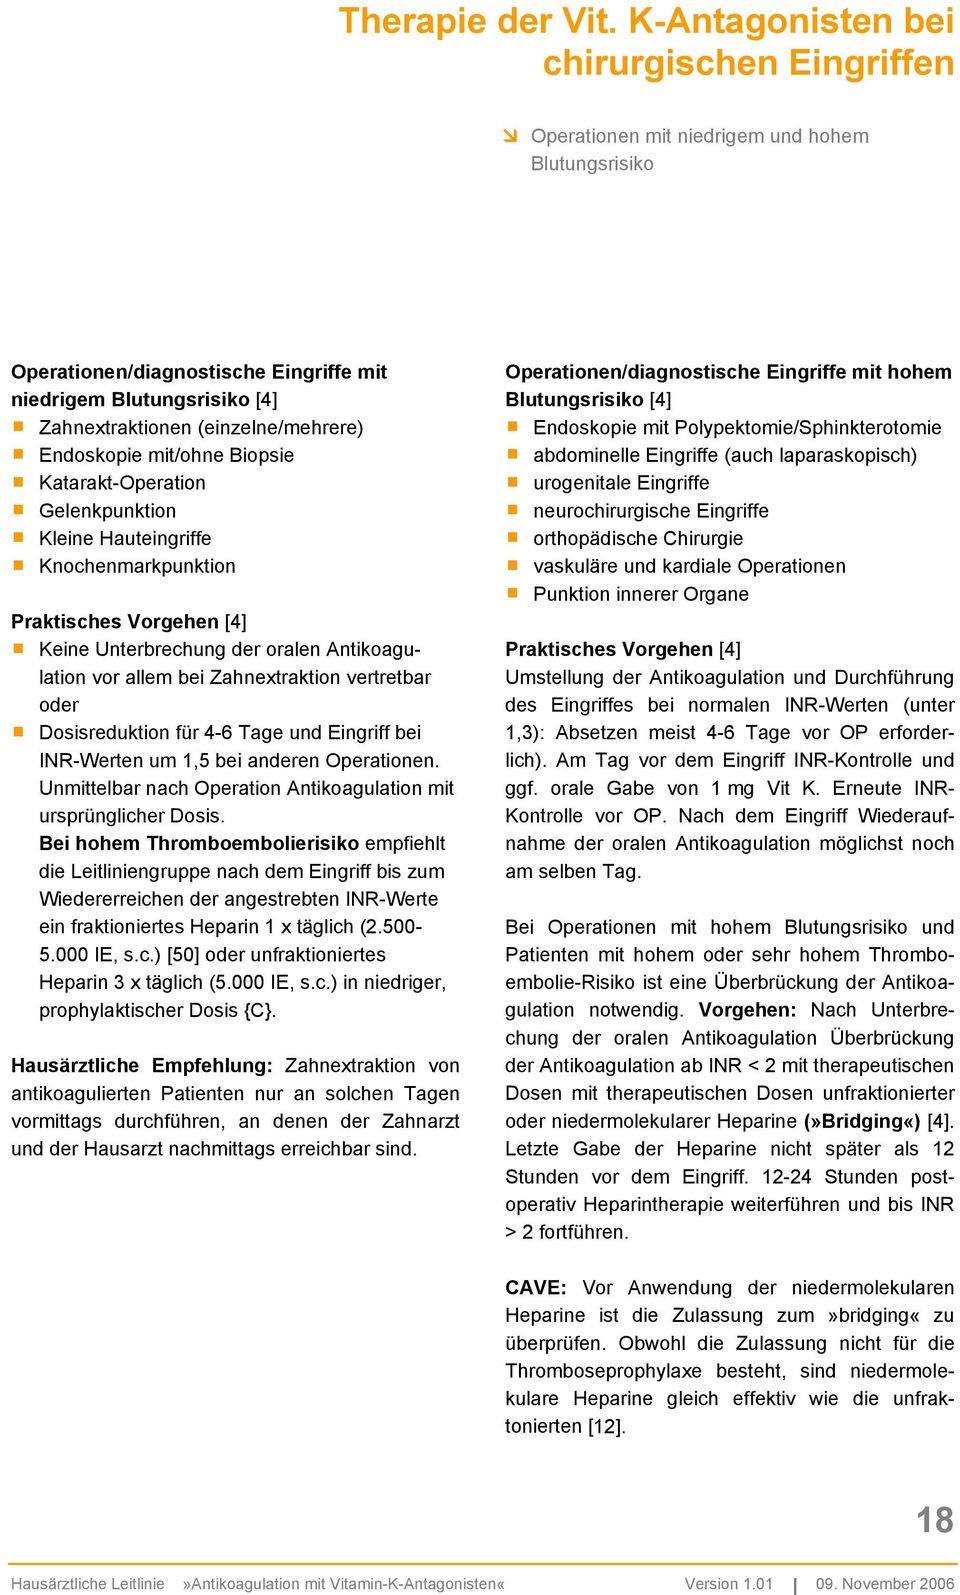 Antikoagulantien Pass Pdf : Hausarztliche Leitlinie Antikoagulation Pdf Free Download : Pdf ...